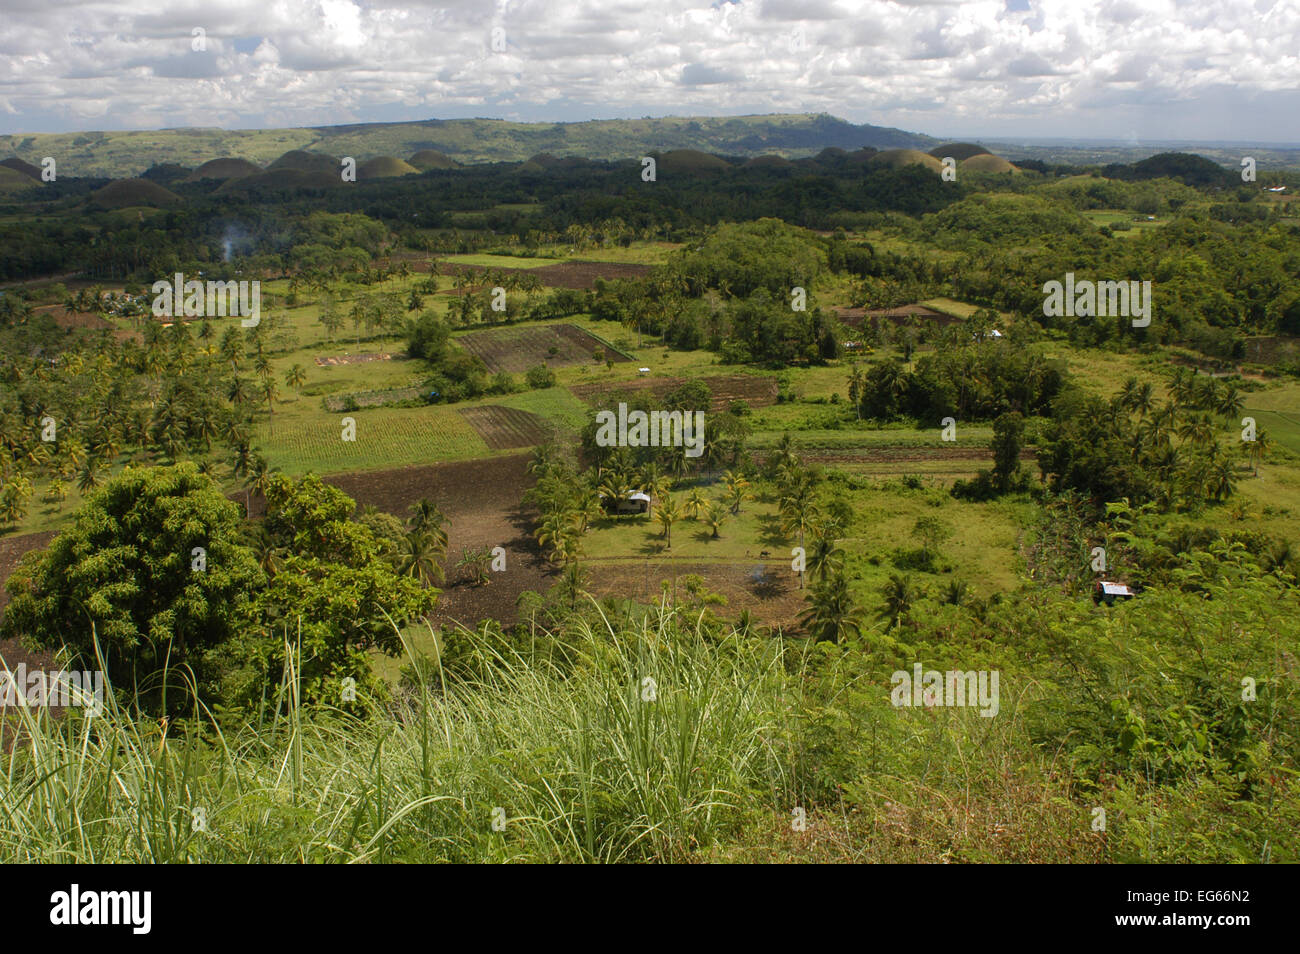 Mountains Chocolate Hills. Bohol. Die Visayas. Philippinen. Die Chocolate Hills sind eine geologische Formation in Bohol Provinz, Ph Stockfoto